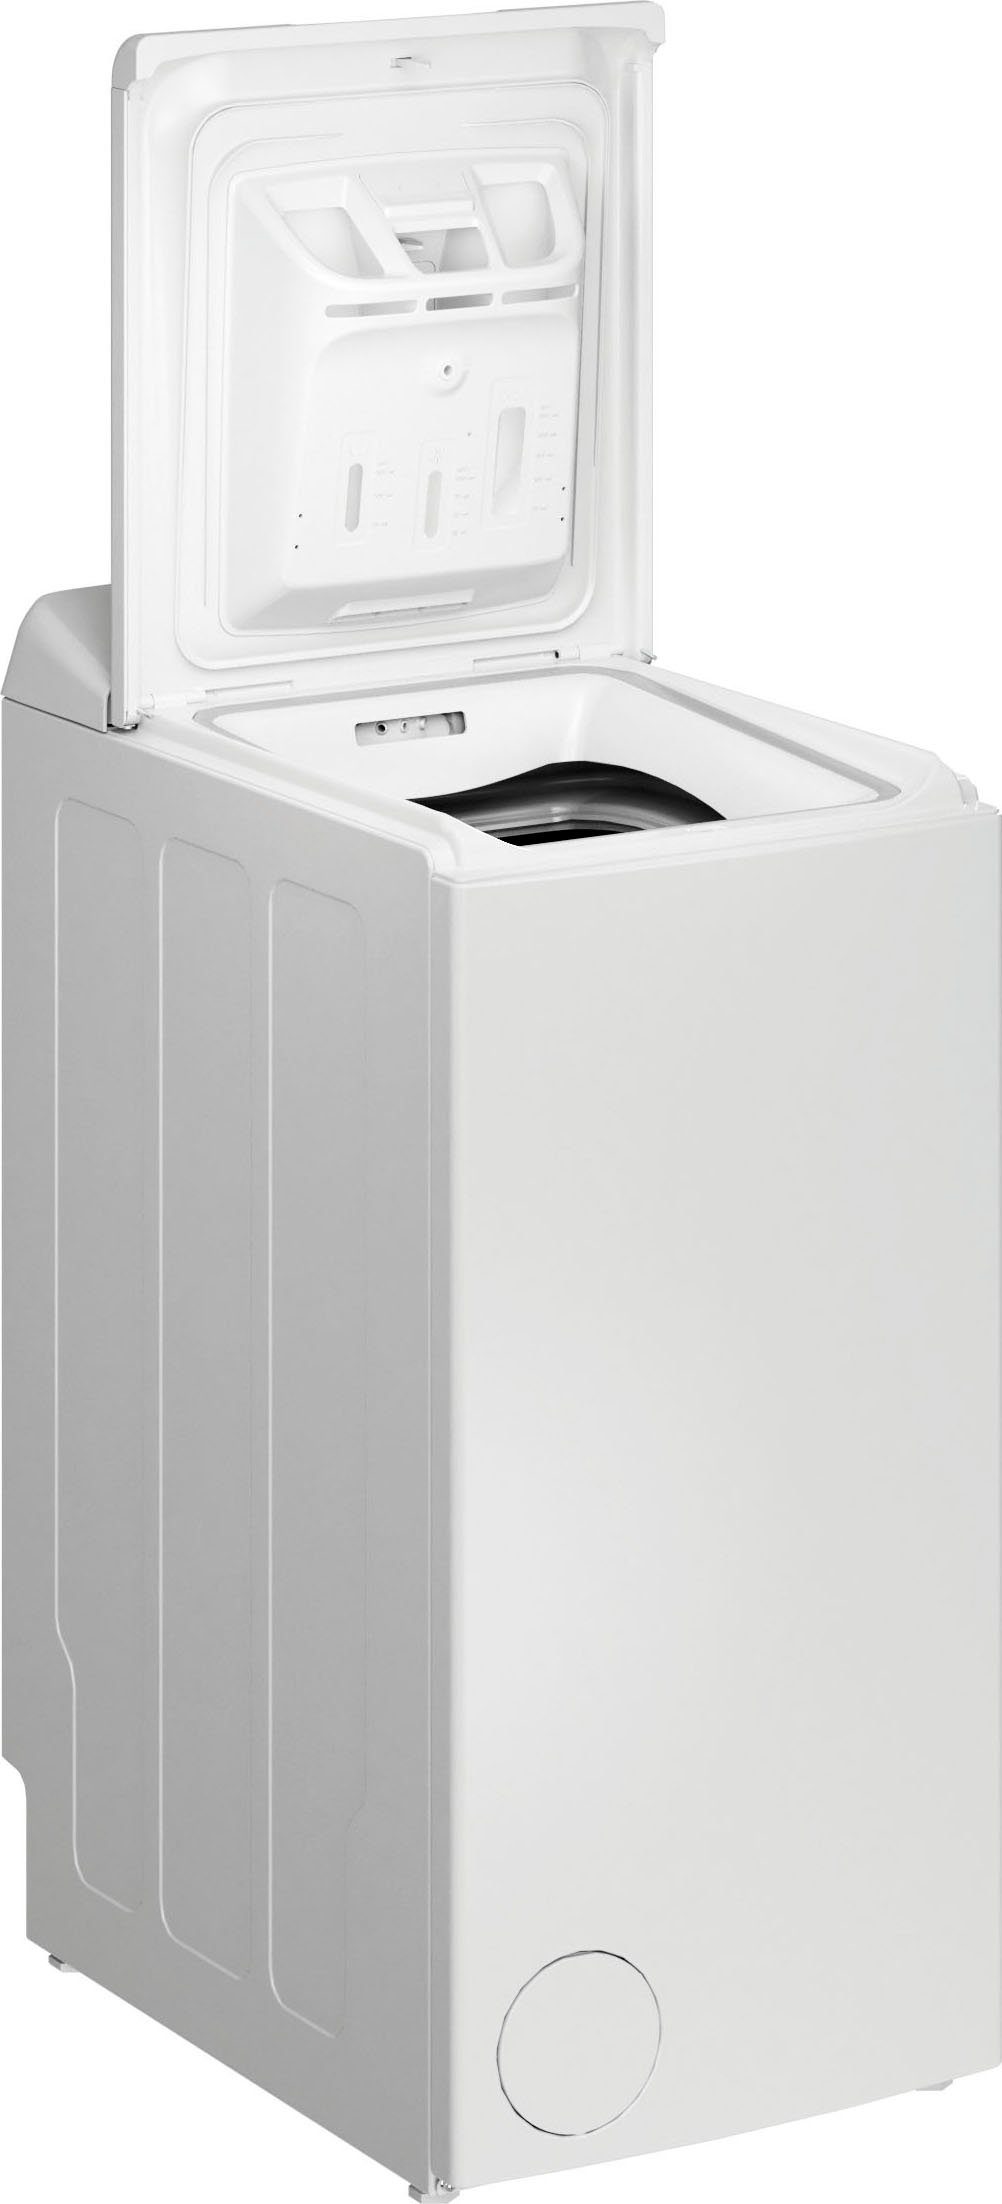 Privileg Waschmaschine LD55 5,5 PWT 1100 U/min DE, Toplader kg